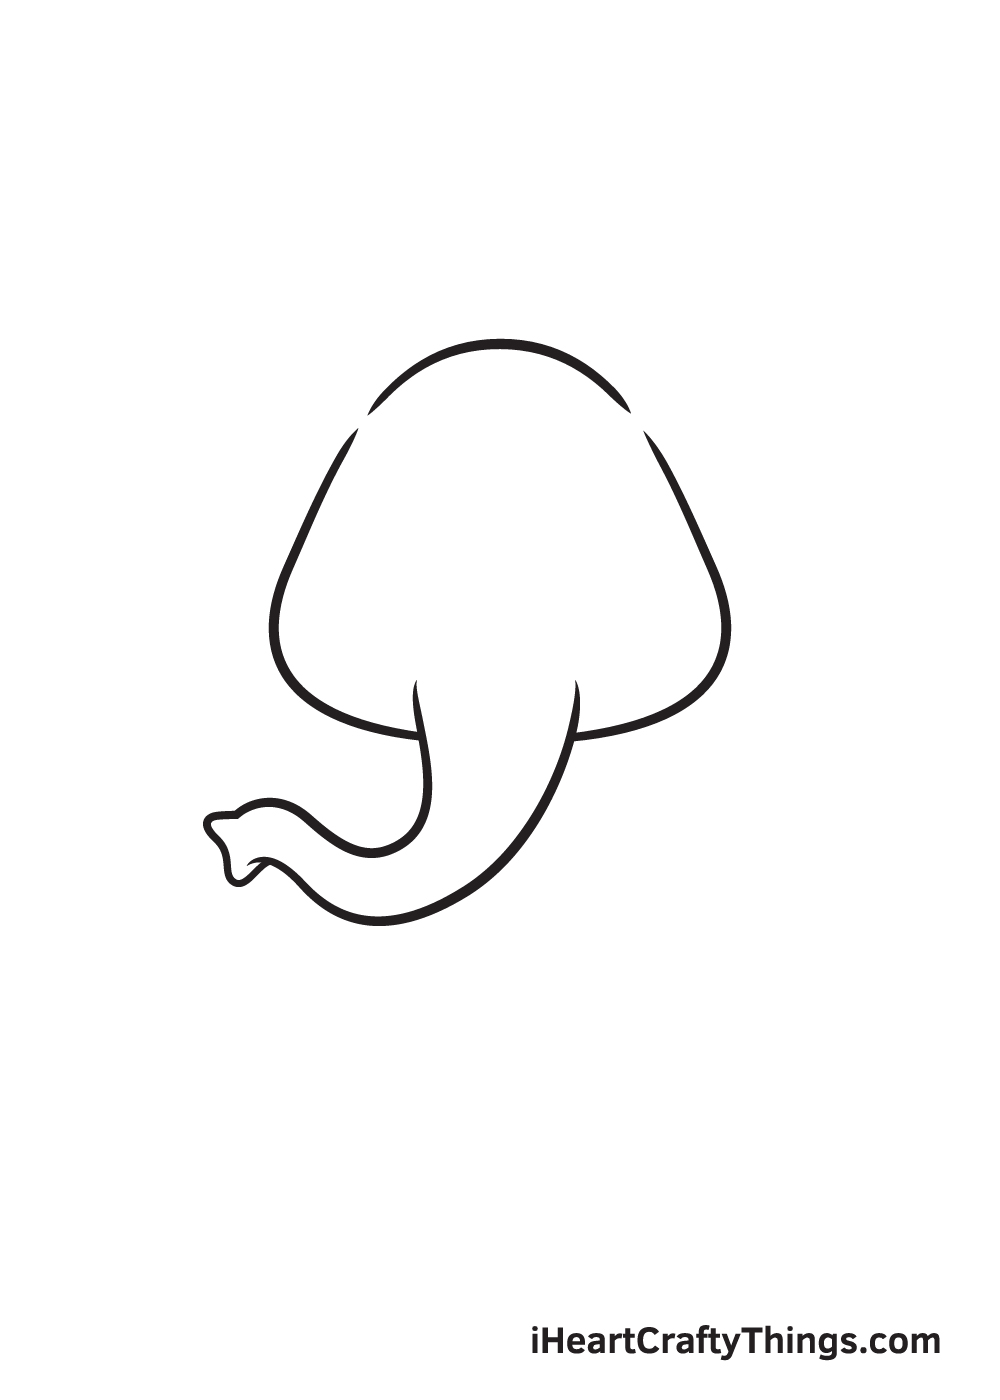 Elephant DRAWING – STEP 1 - Hướng dẫn chi tiết cách vẽ con voi đơn giản với 6 bước cơ bản